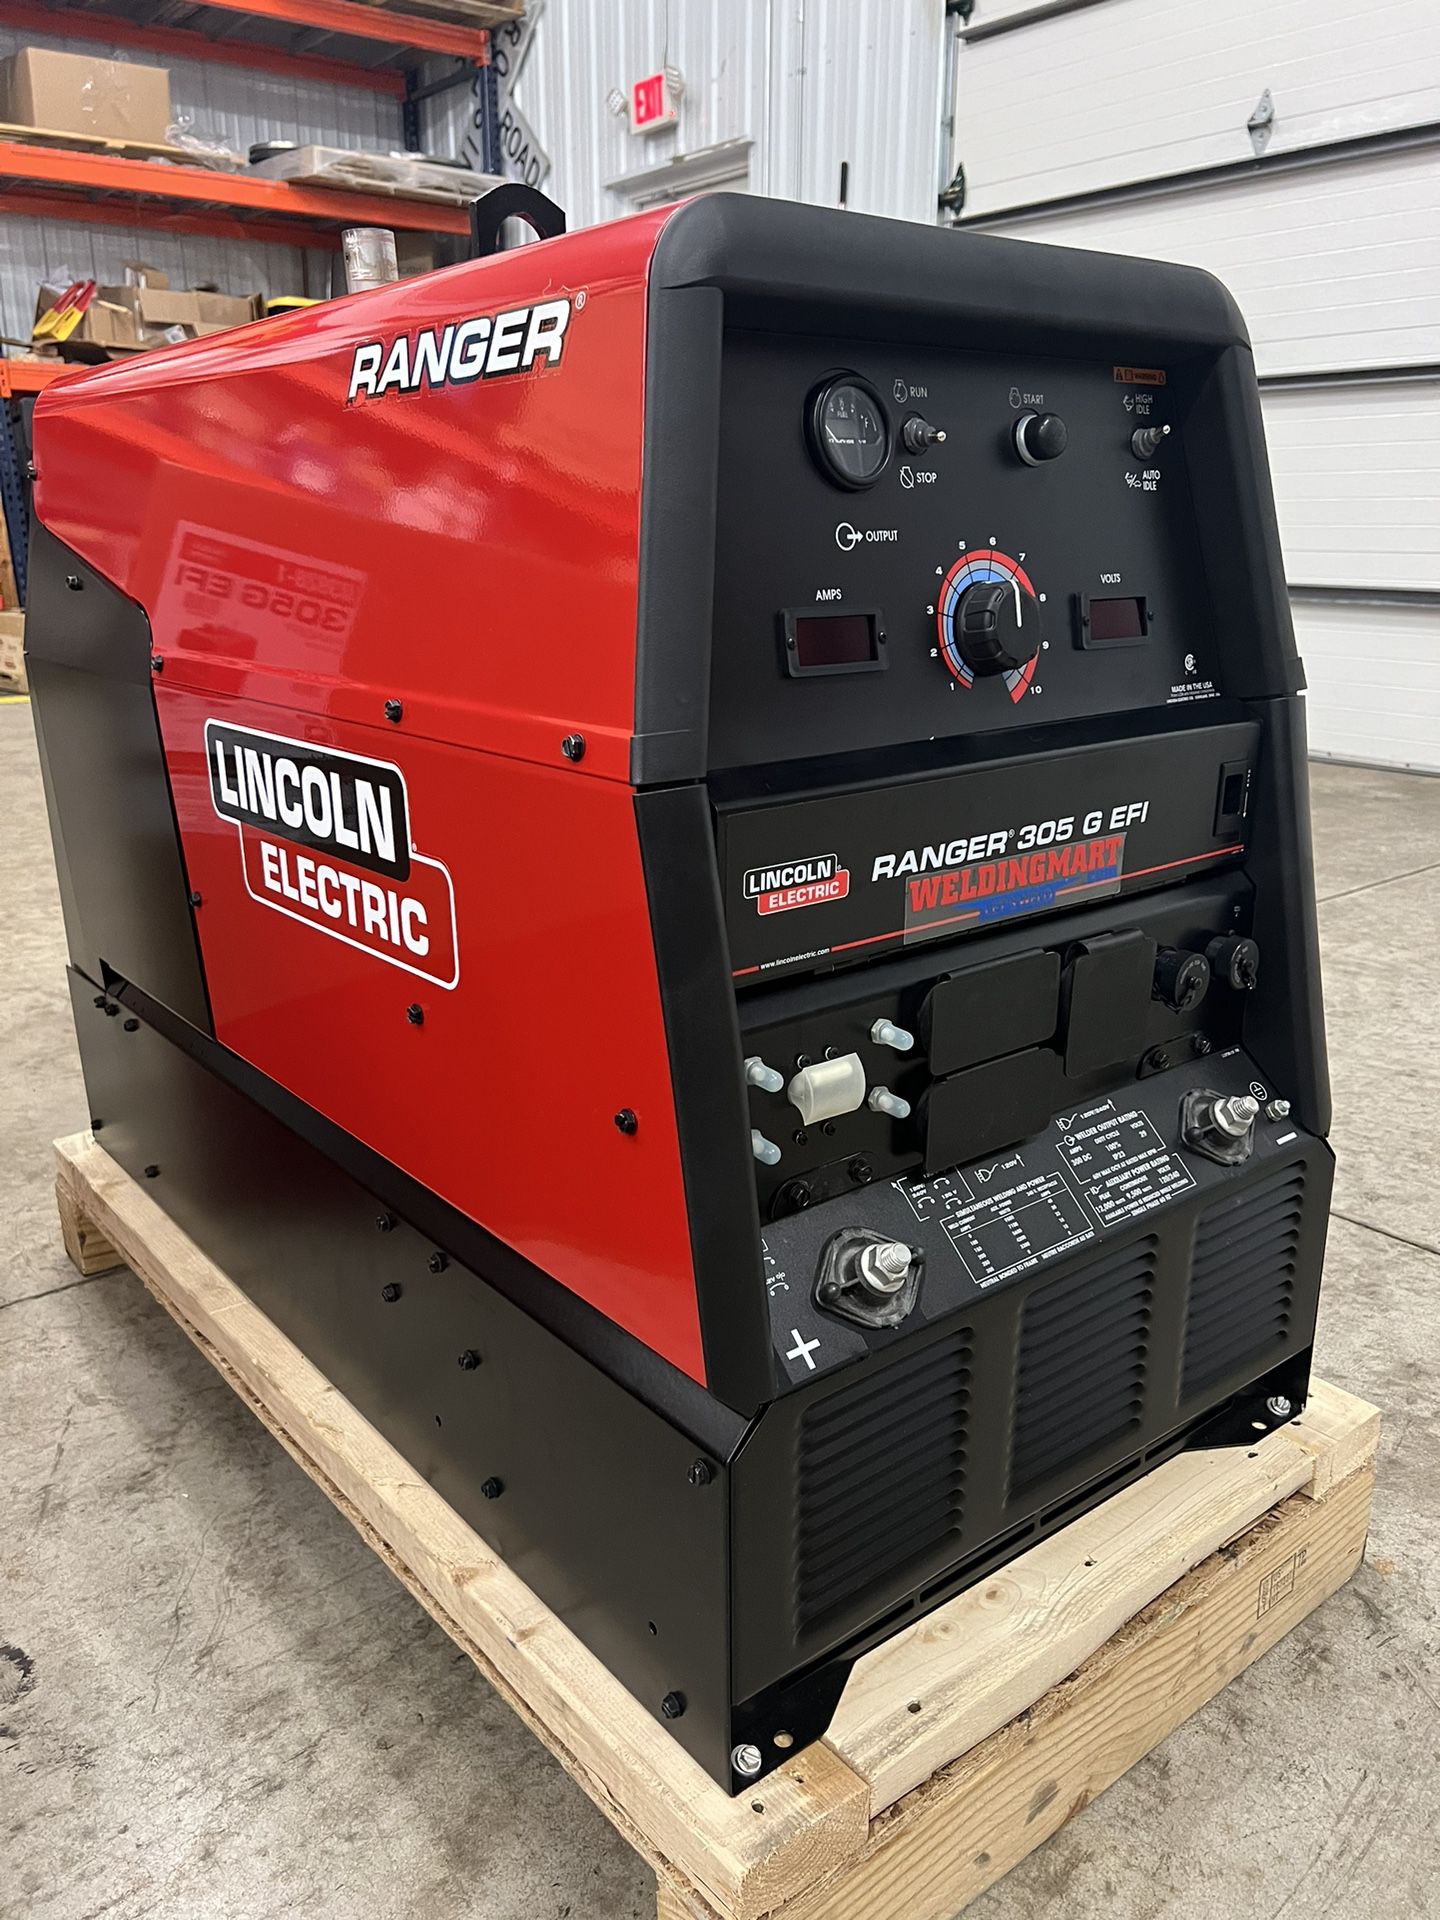 Lincoln Ranger 305G EFI Welder/Generator